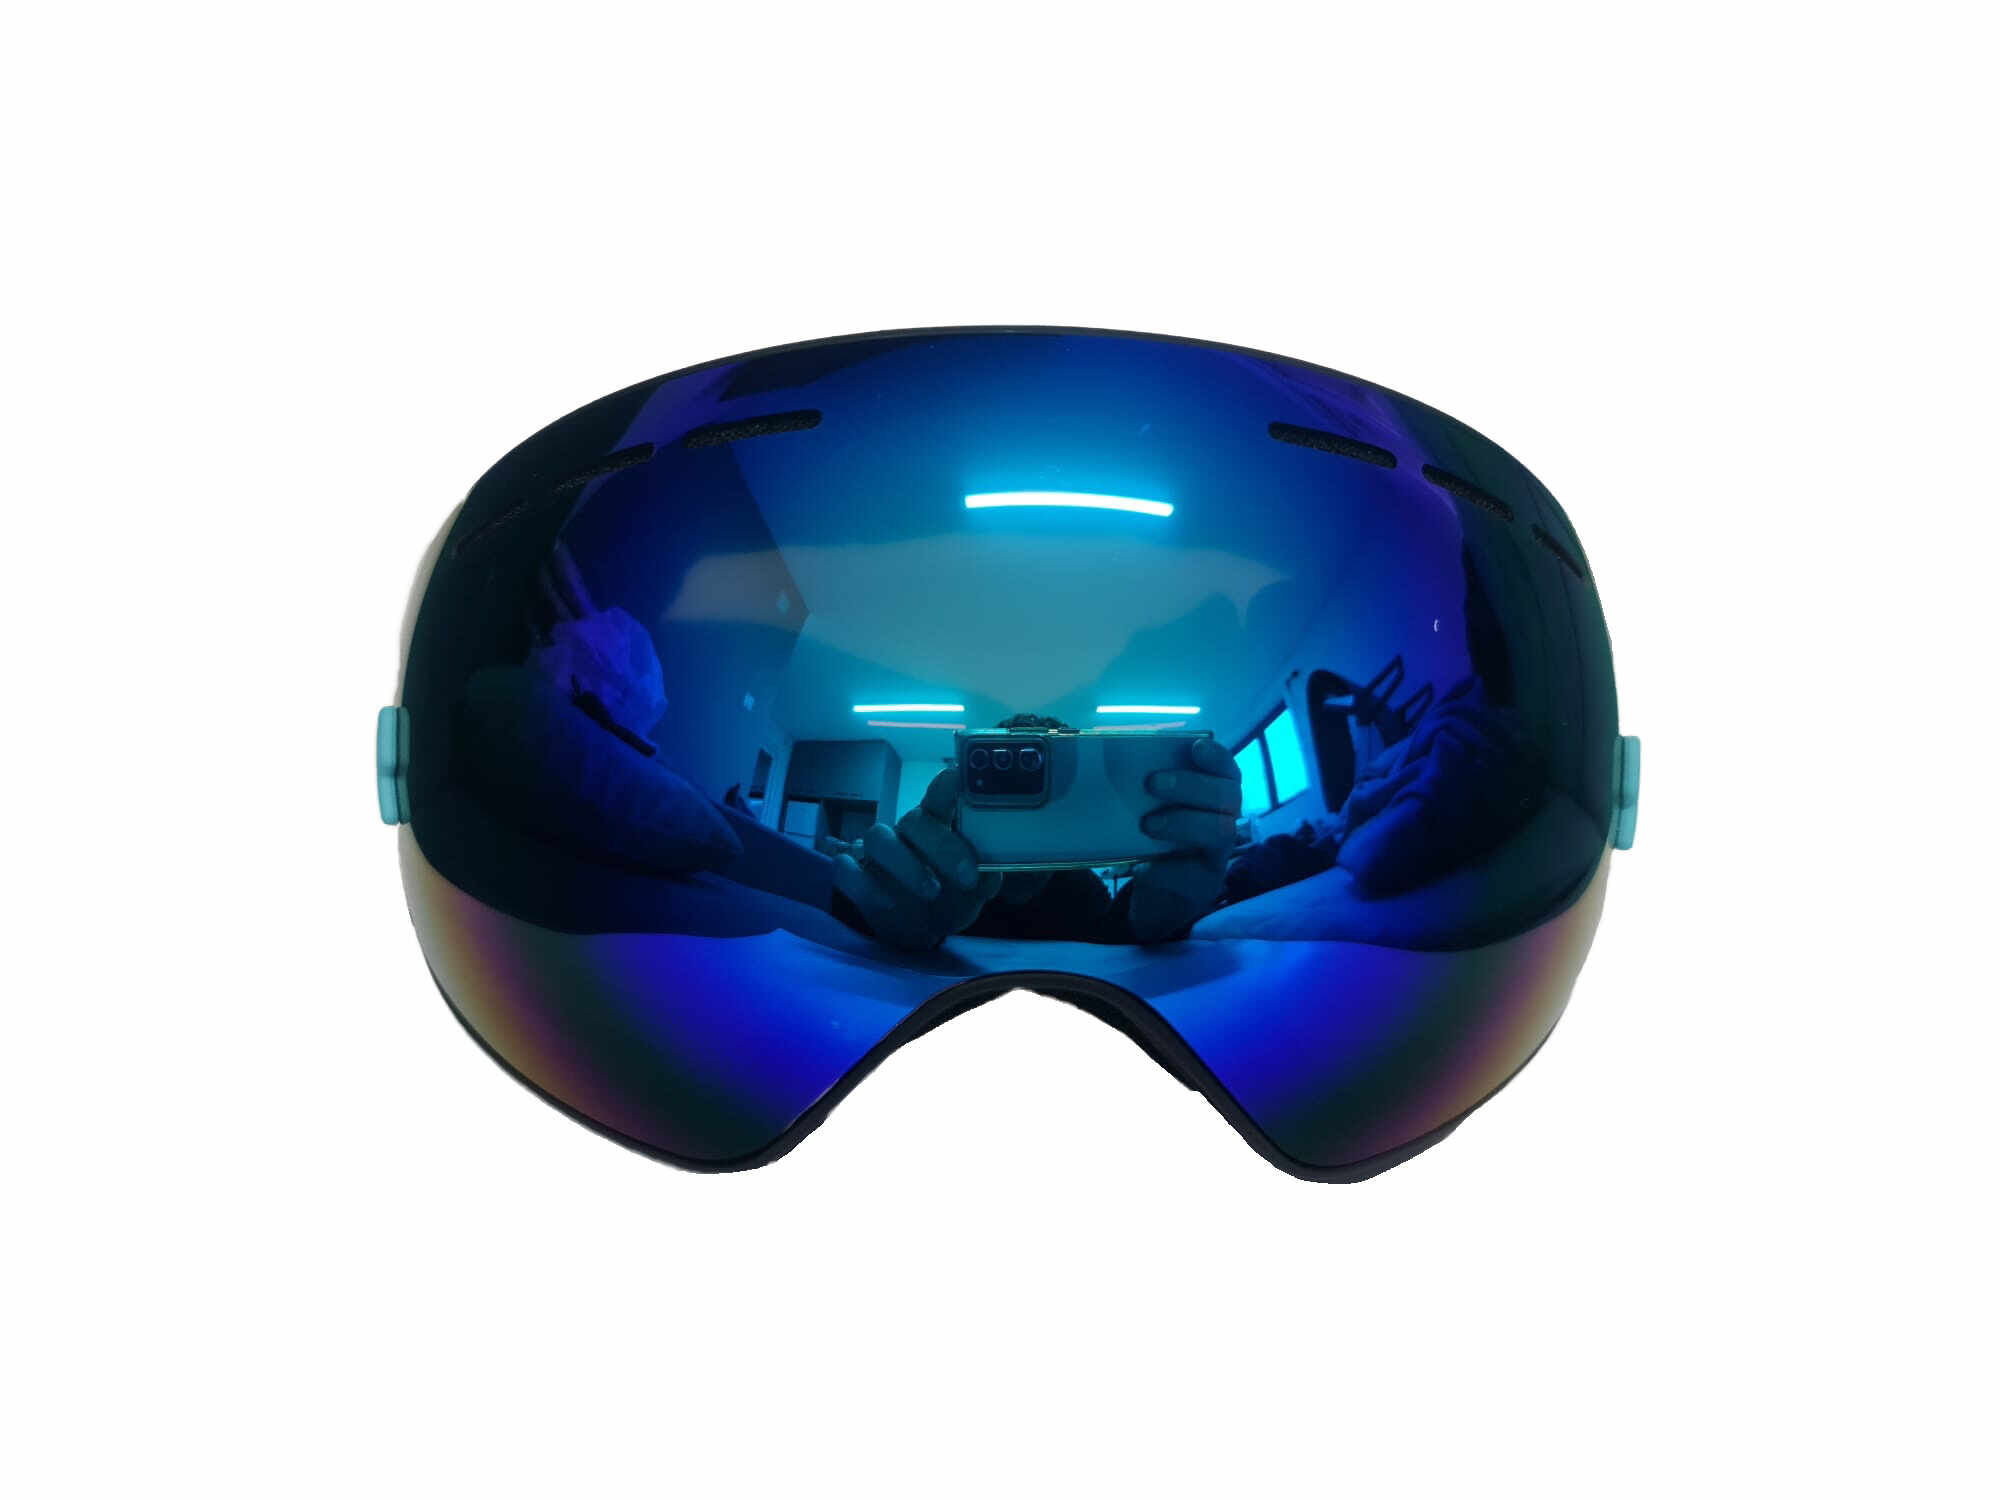 Ochelari ski si , lentila sferica dubla, demontabila, polarizata, ventilate anti-ceata, oglinda, albastru